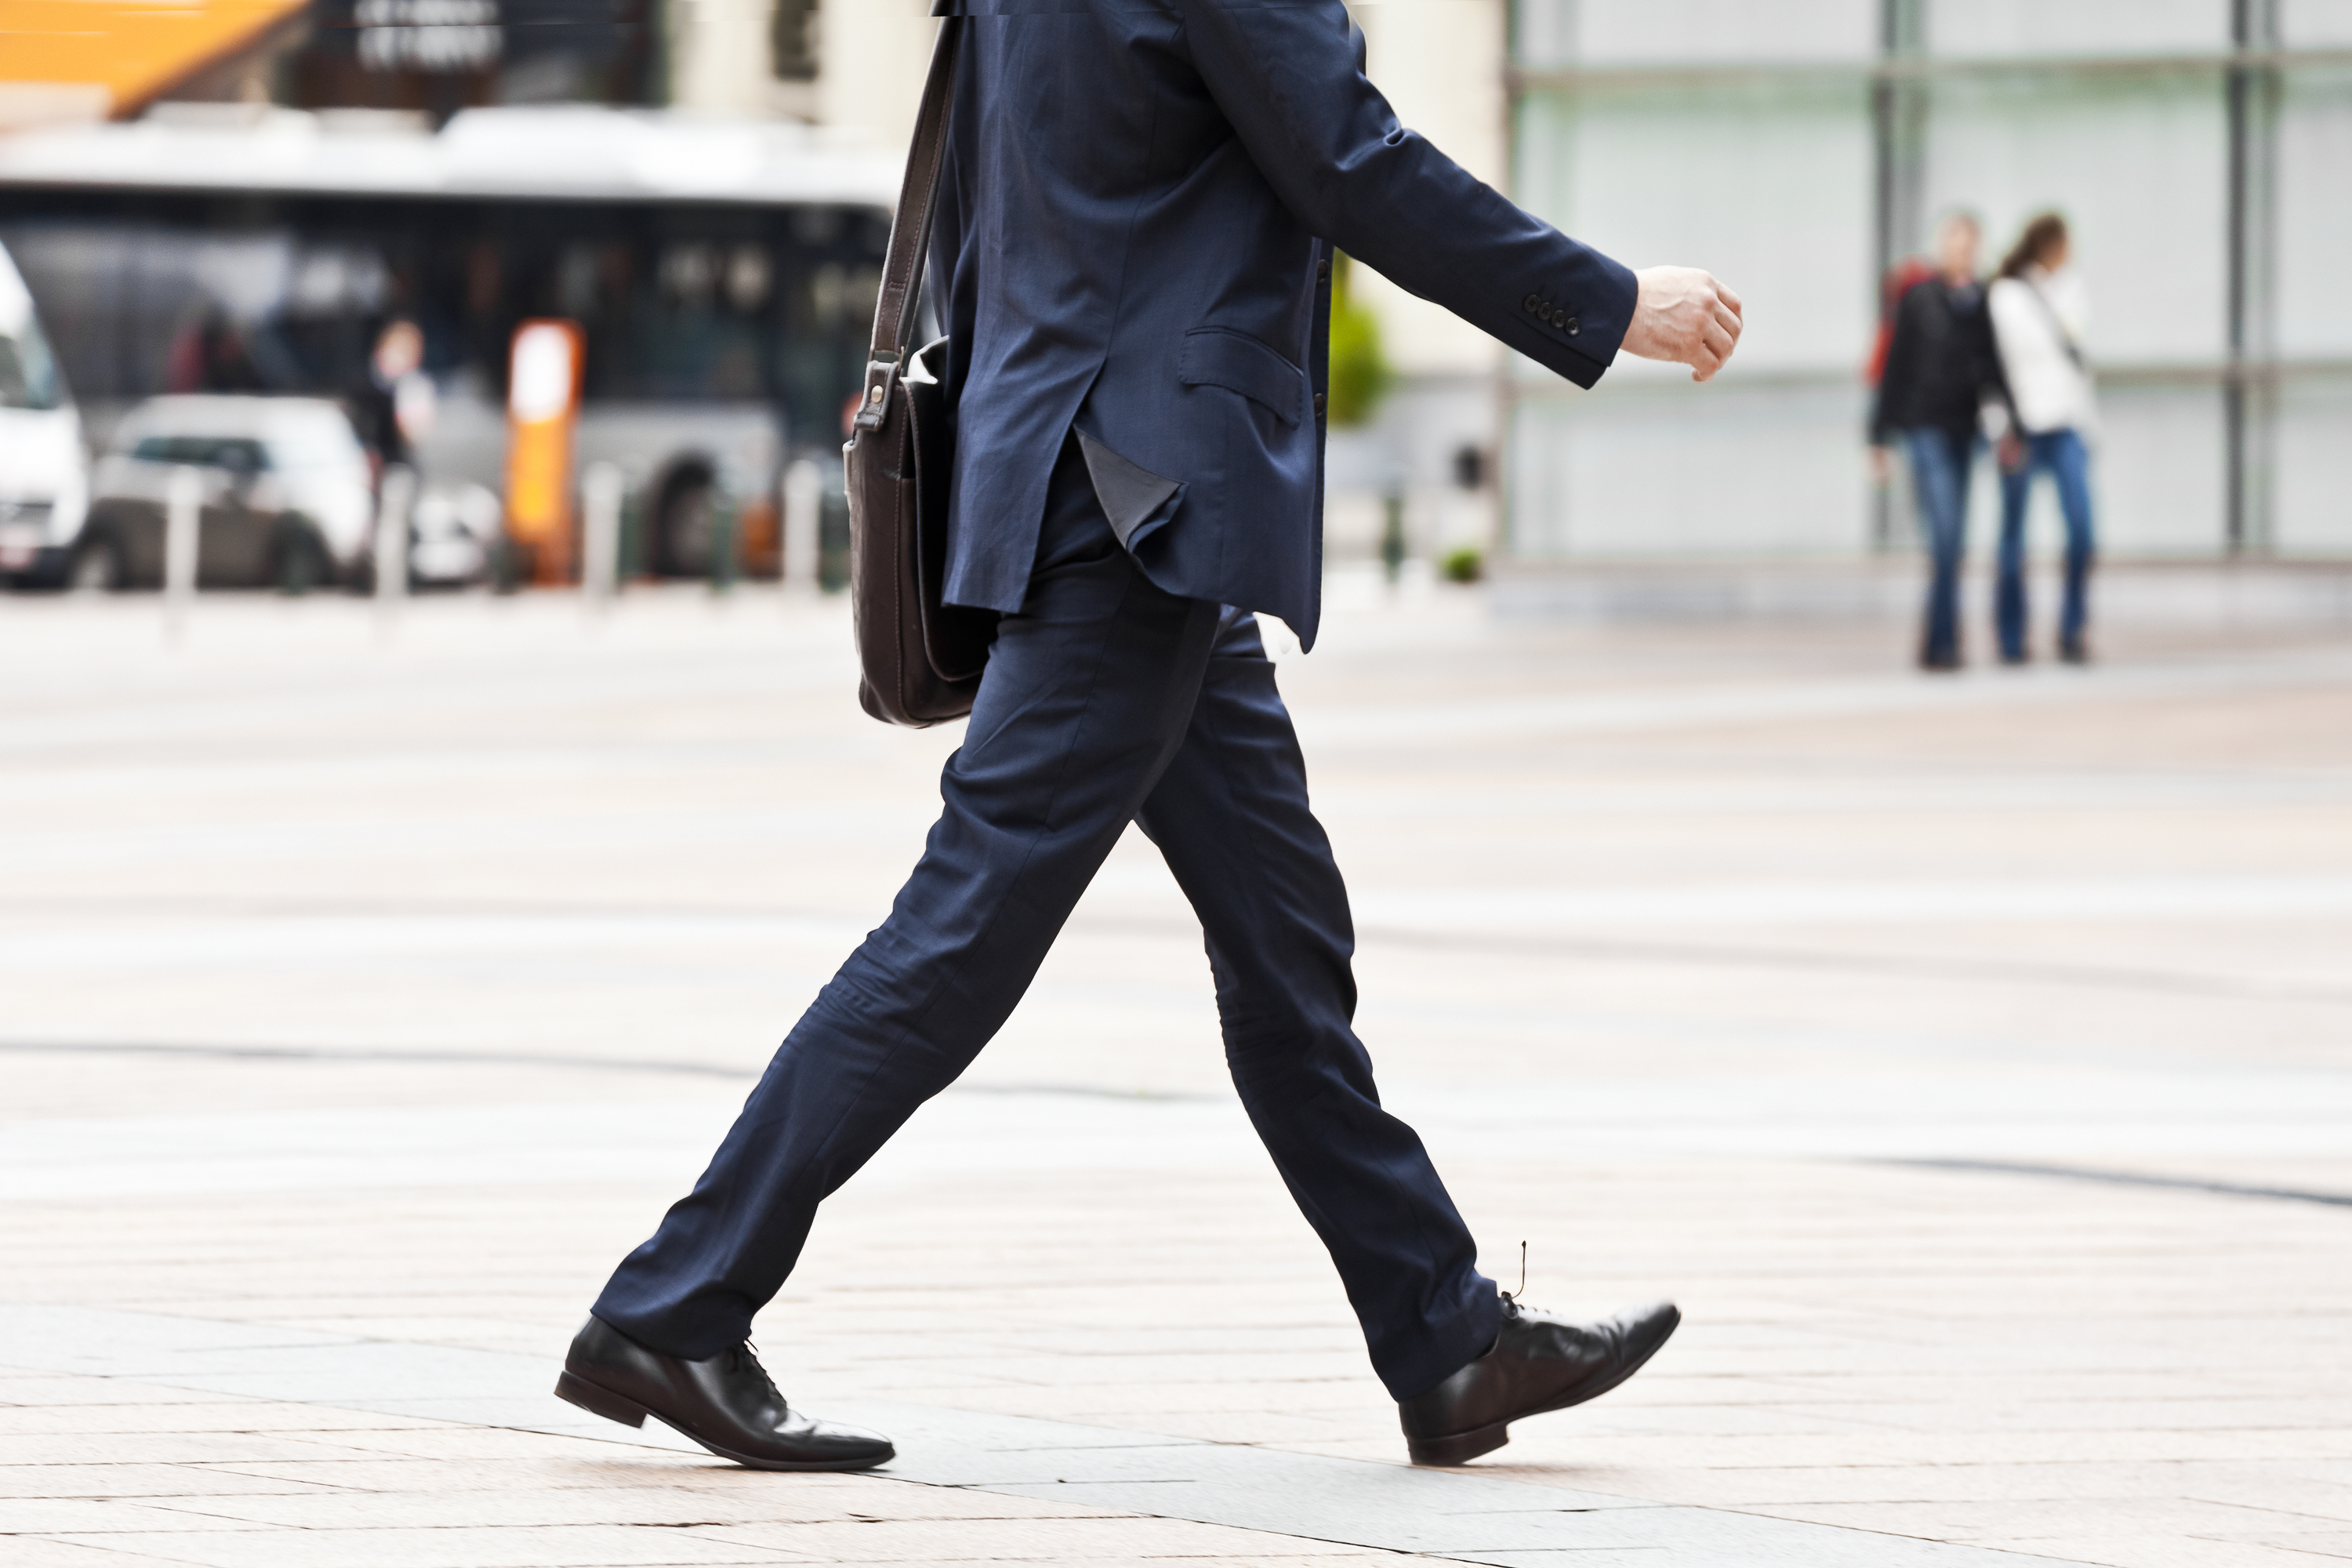 Going businessman | Source: Shutterstock